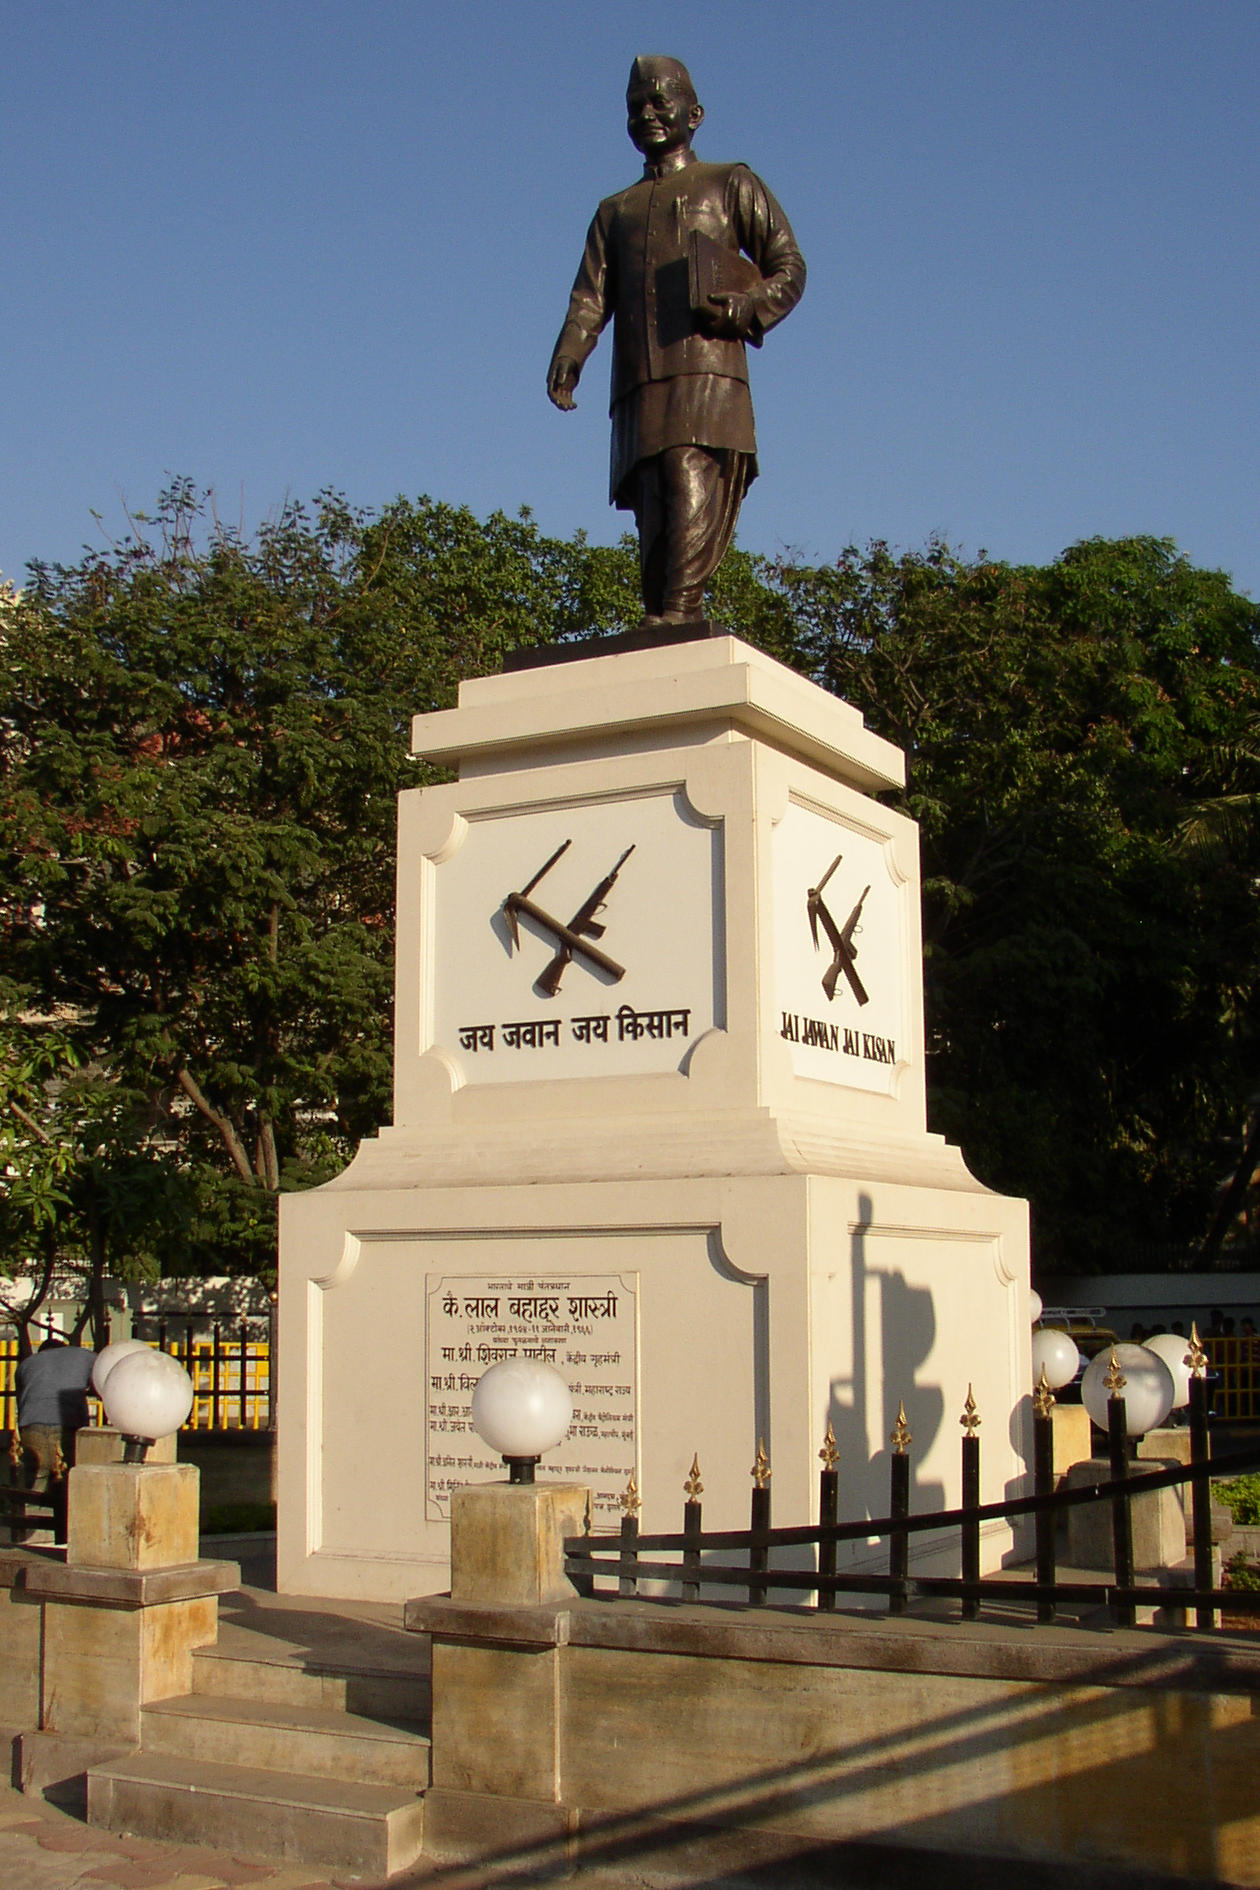 Statue of Shastri in Mumbai